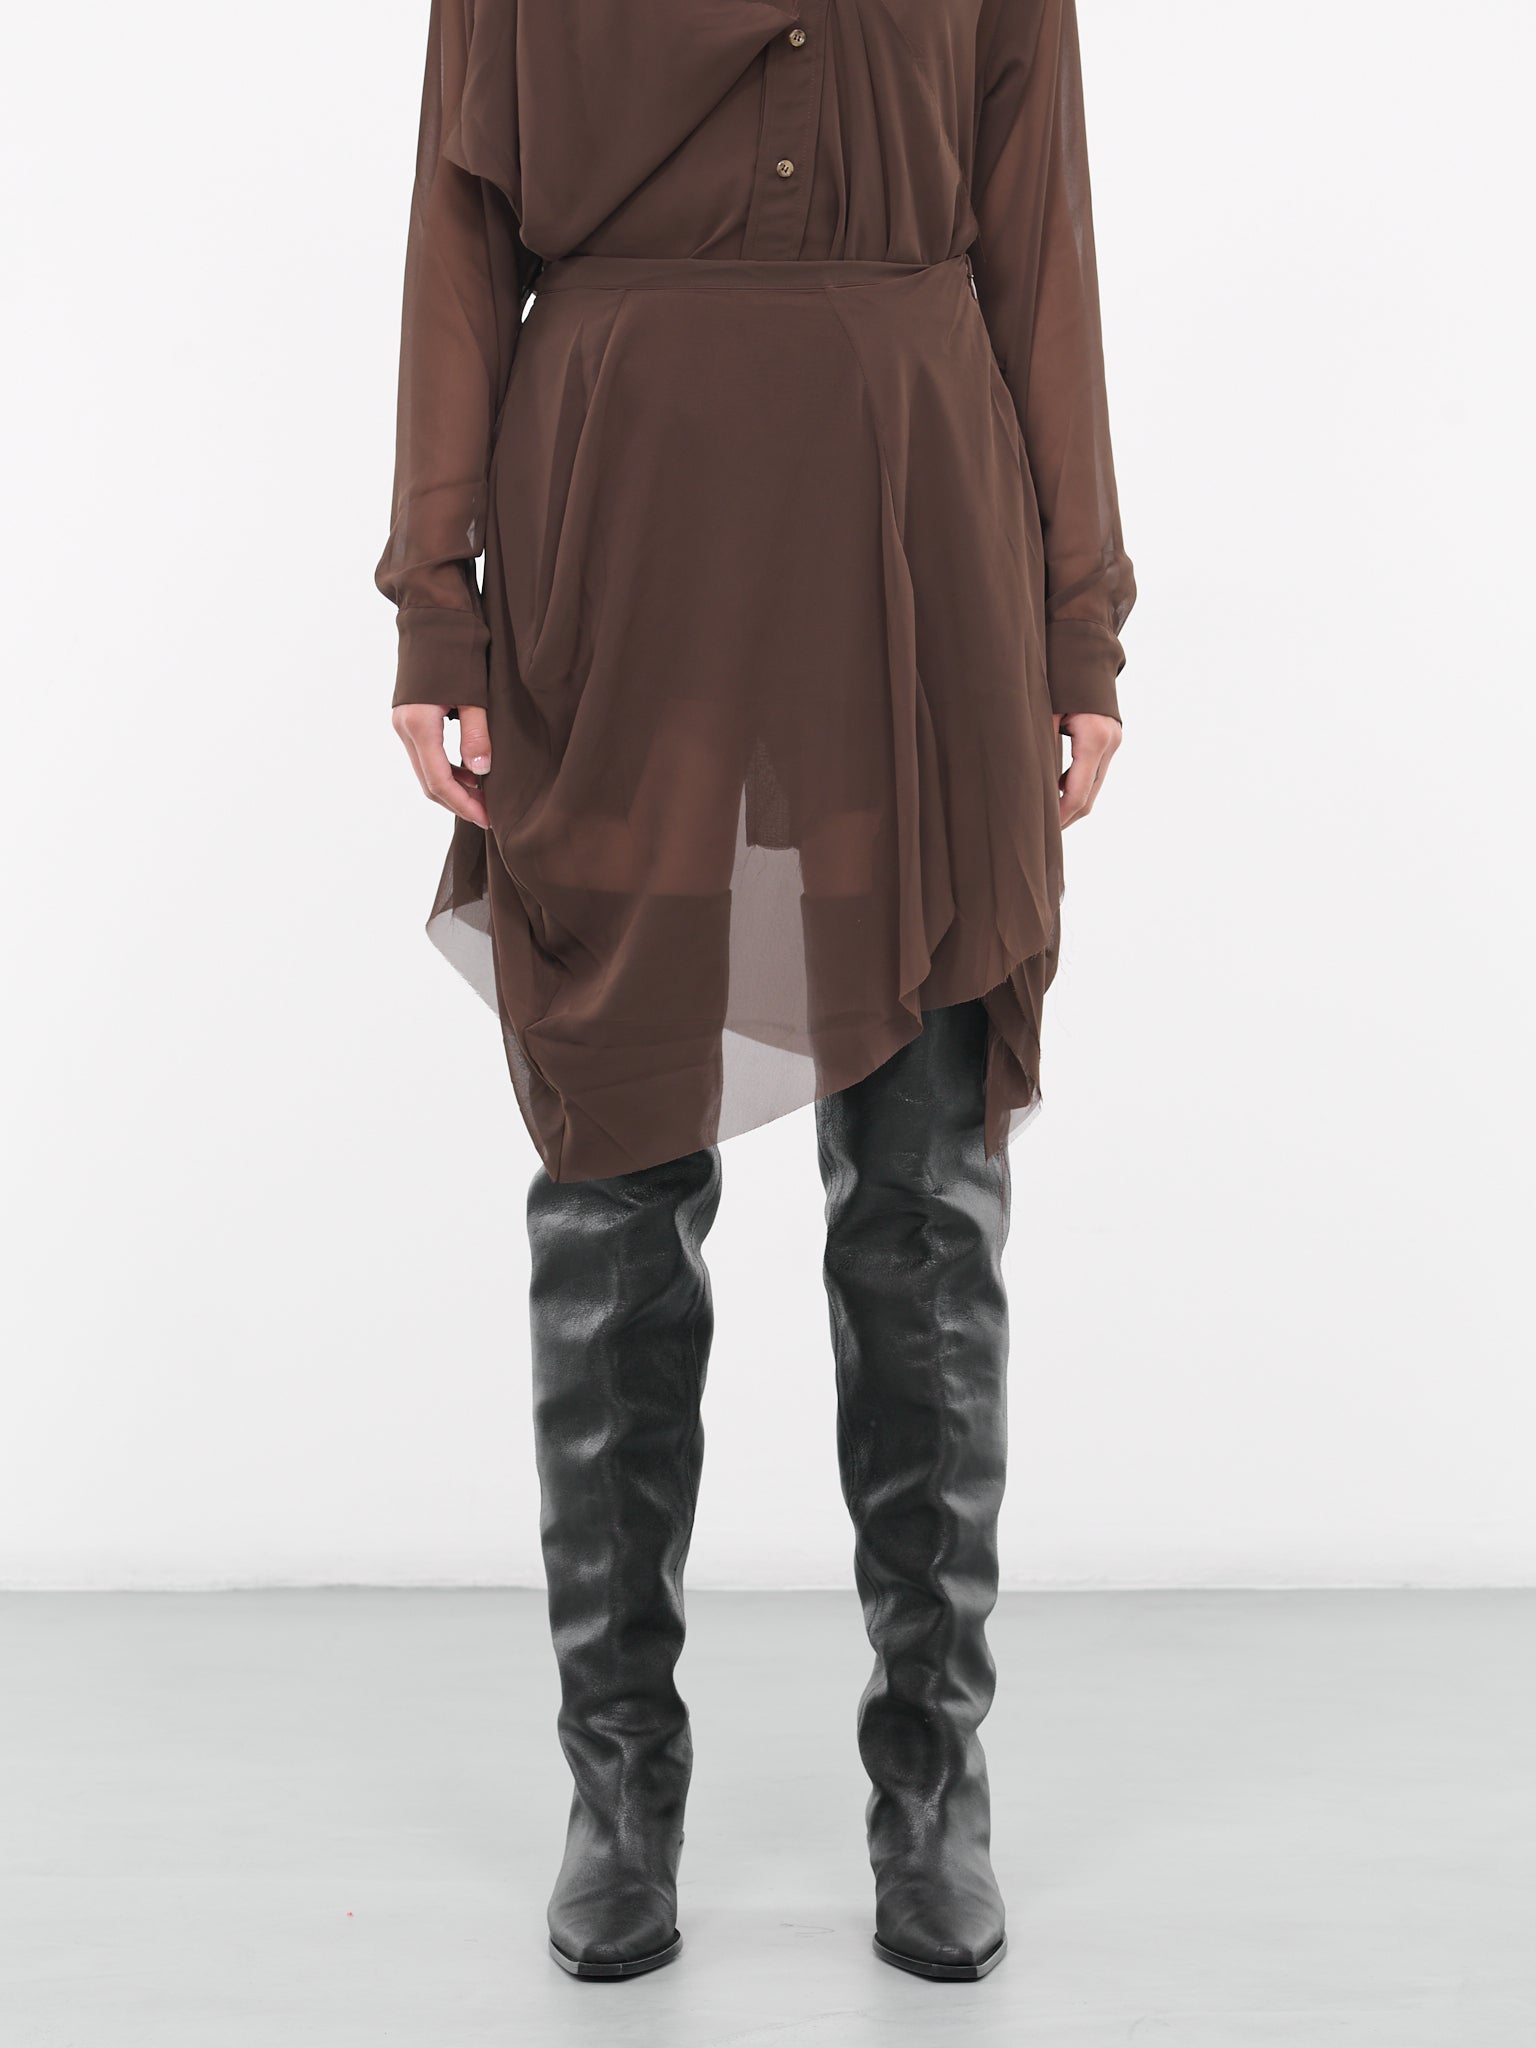 Draped Sheer Skirt (SK07-BROWN)